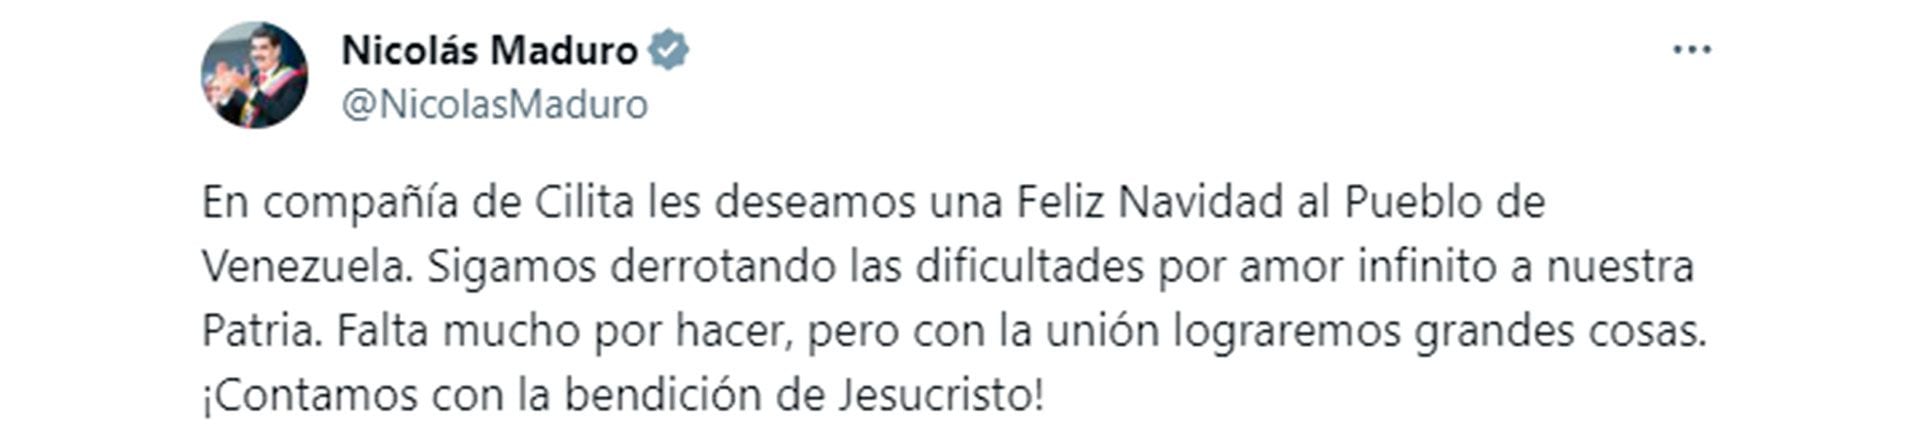 El mensaje de Nicolás Maduro en Navidad